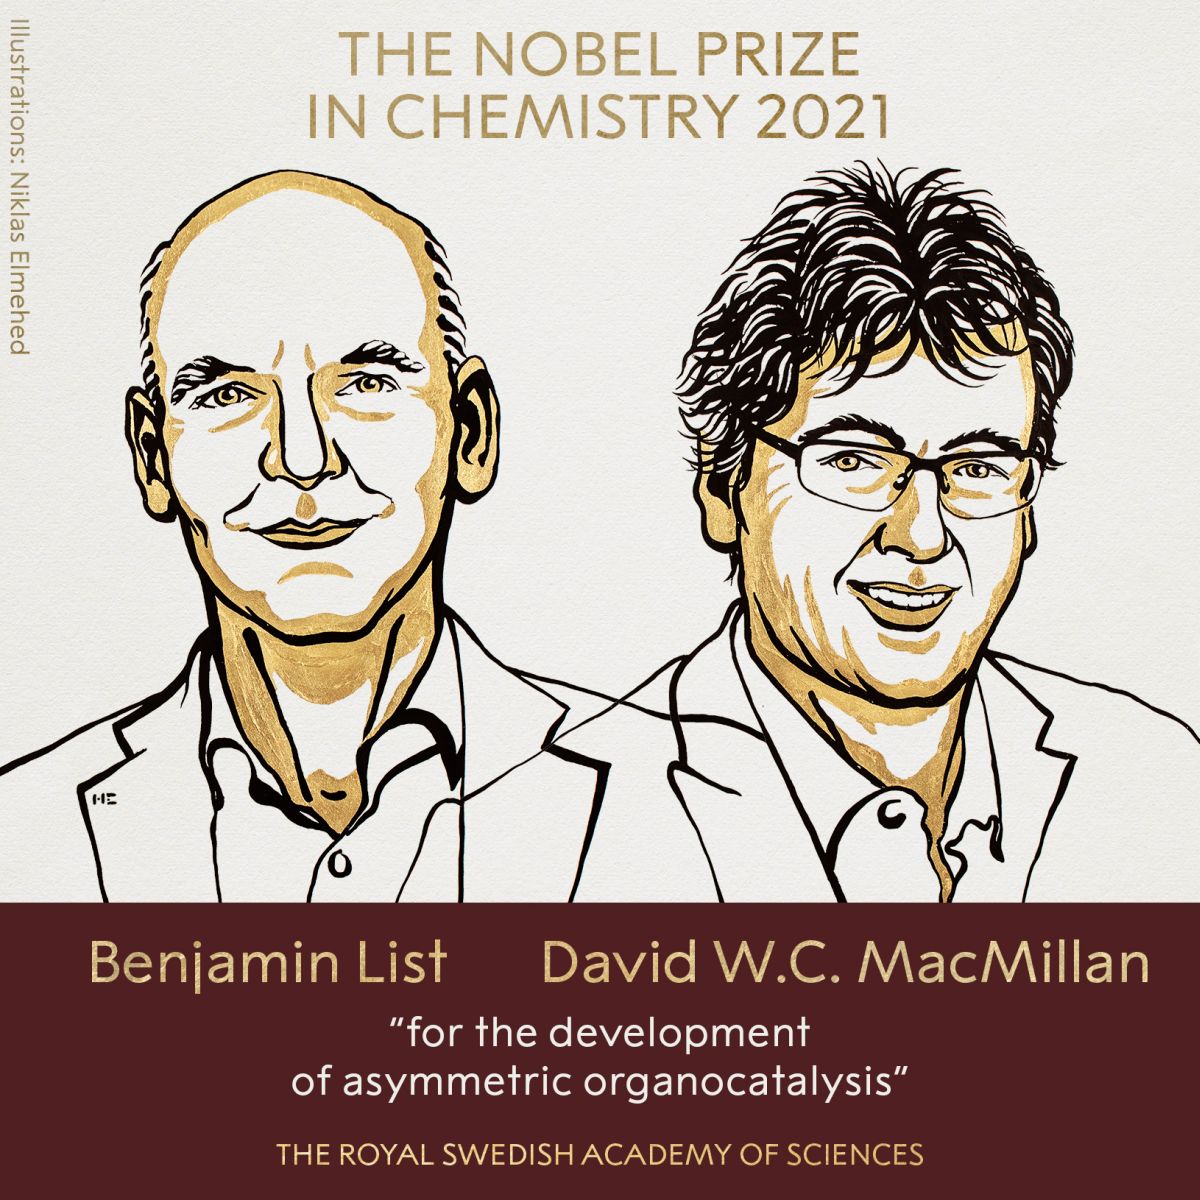 Benjamin List, David W C MacMillan win 2021 Nobel Prize in Chemistry - Rediff.com India News